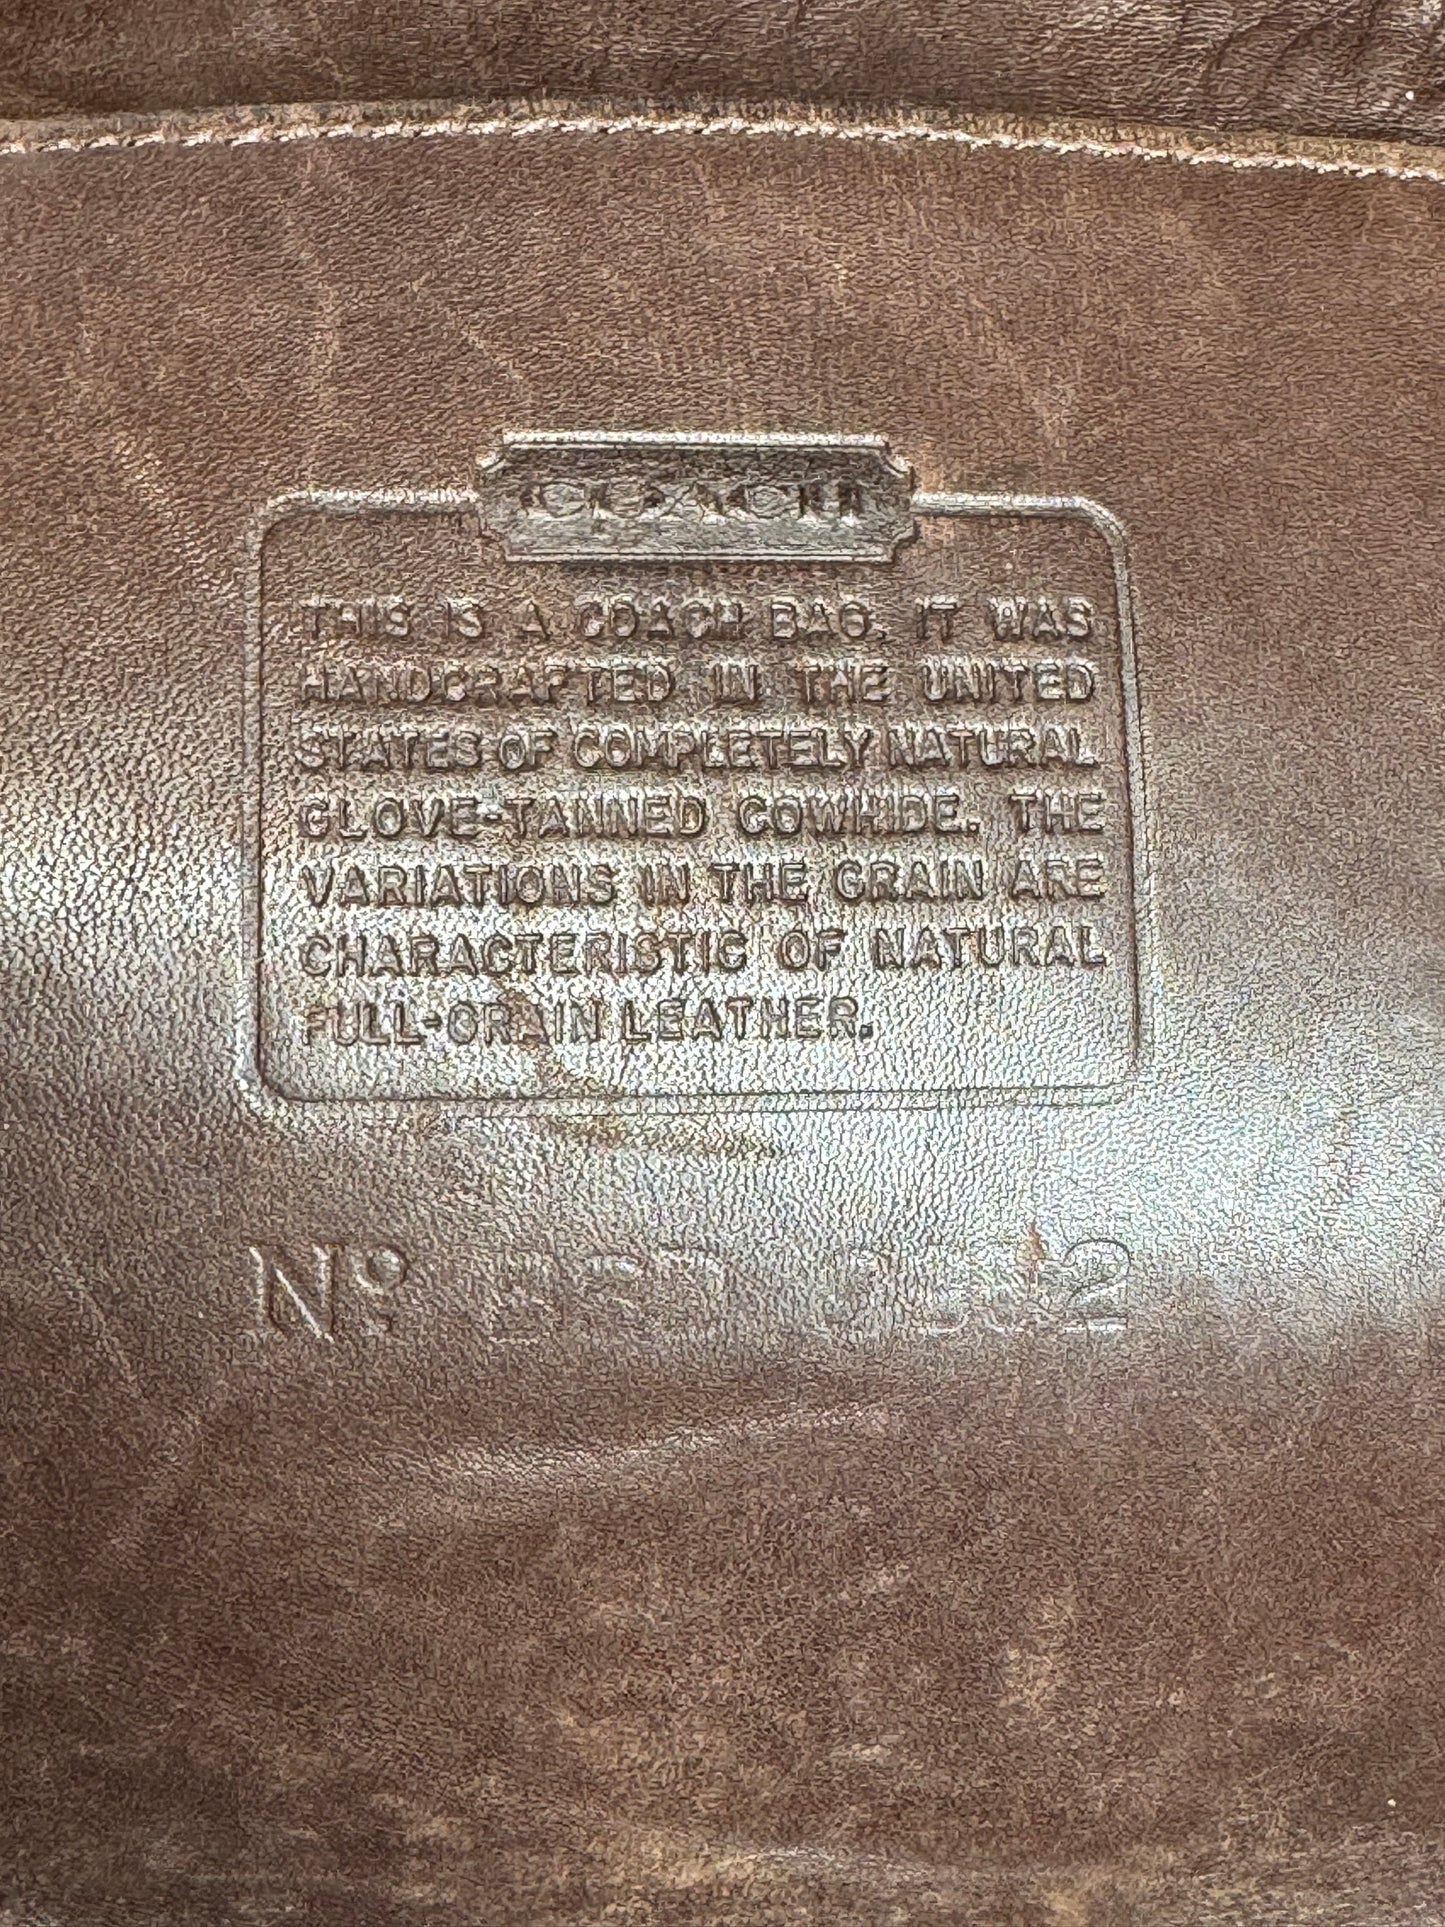 1990s Brown Drawstring Shoulder Bag (BBD9852)